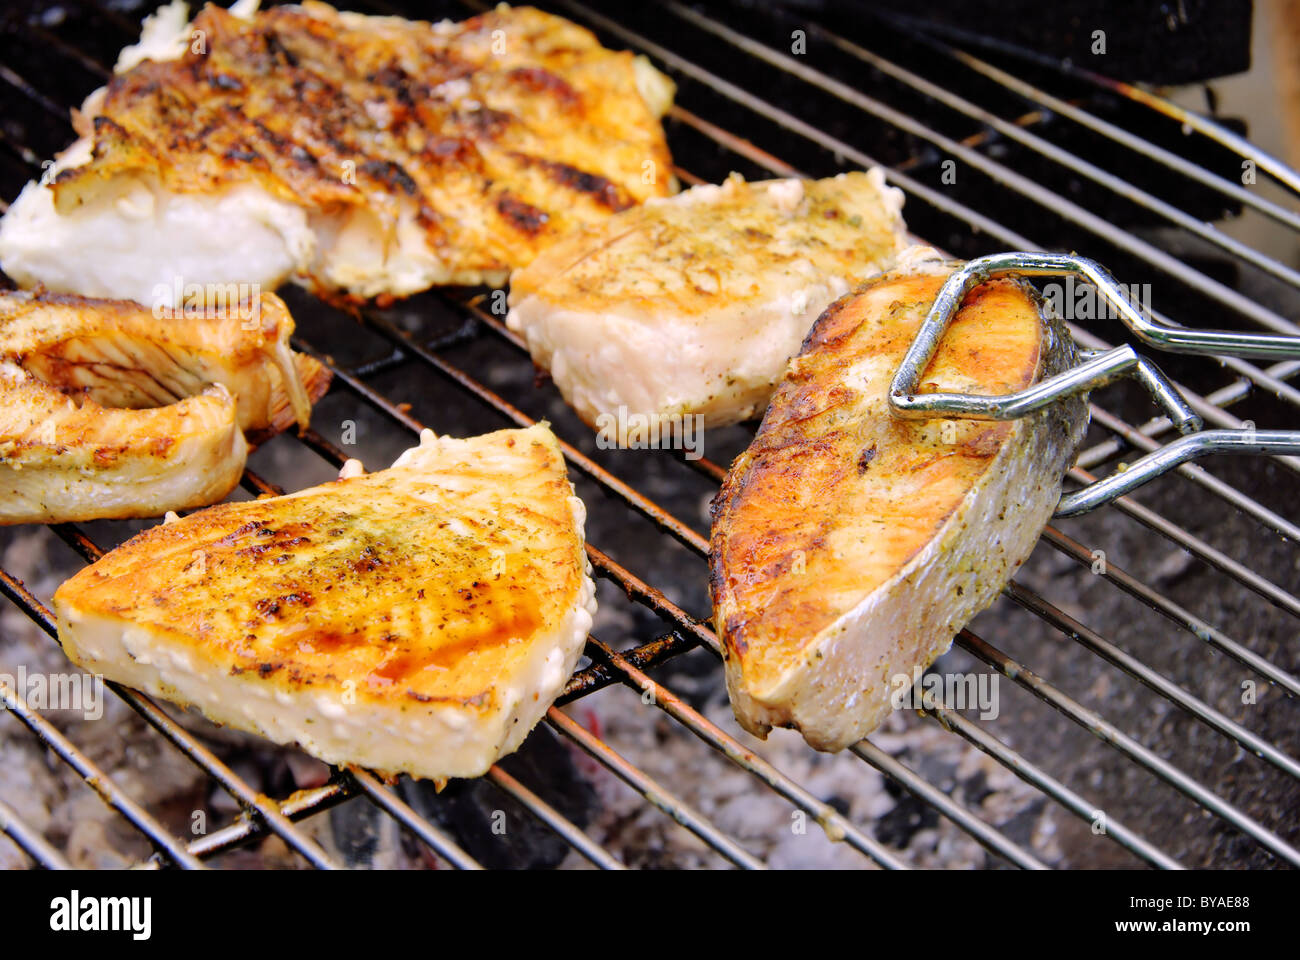 Grillen Fischsteak - Grillen Steak vom Fisch 17 Stockfoto